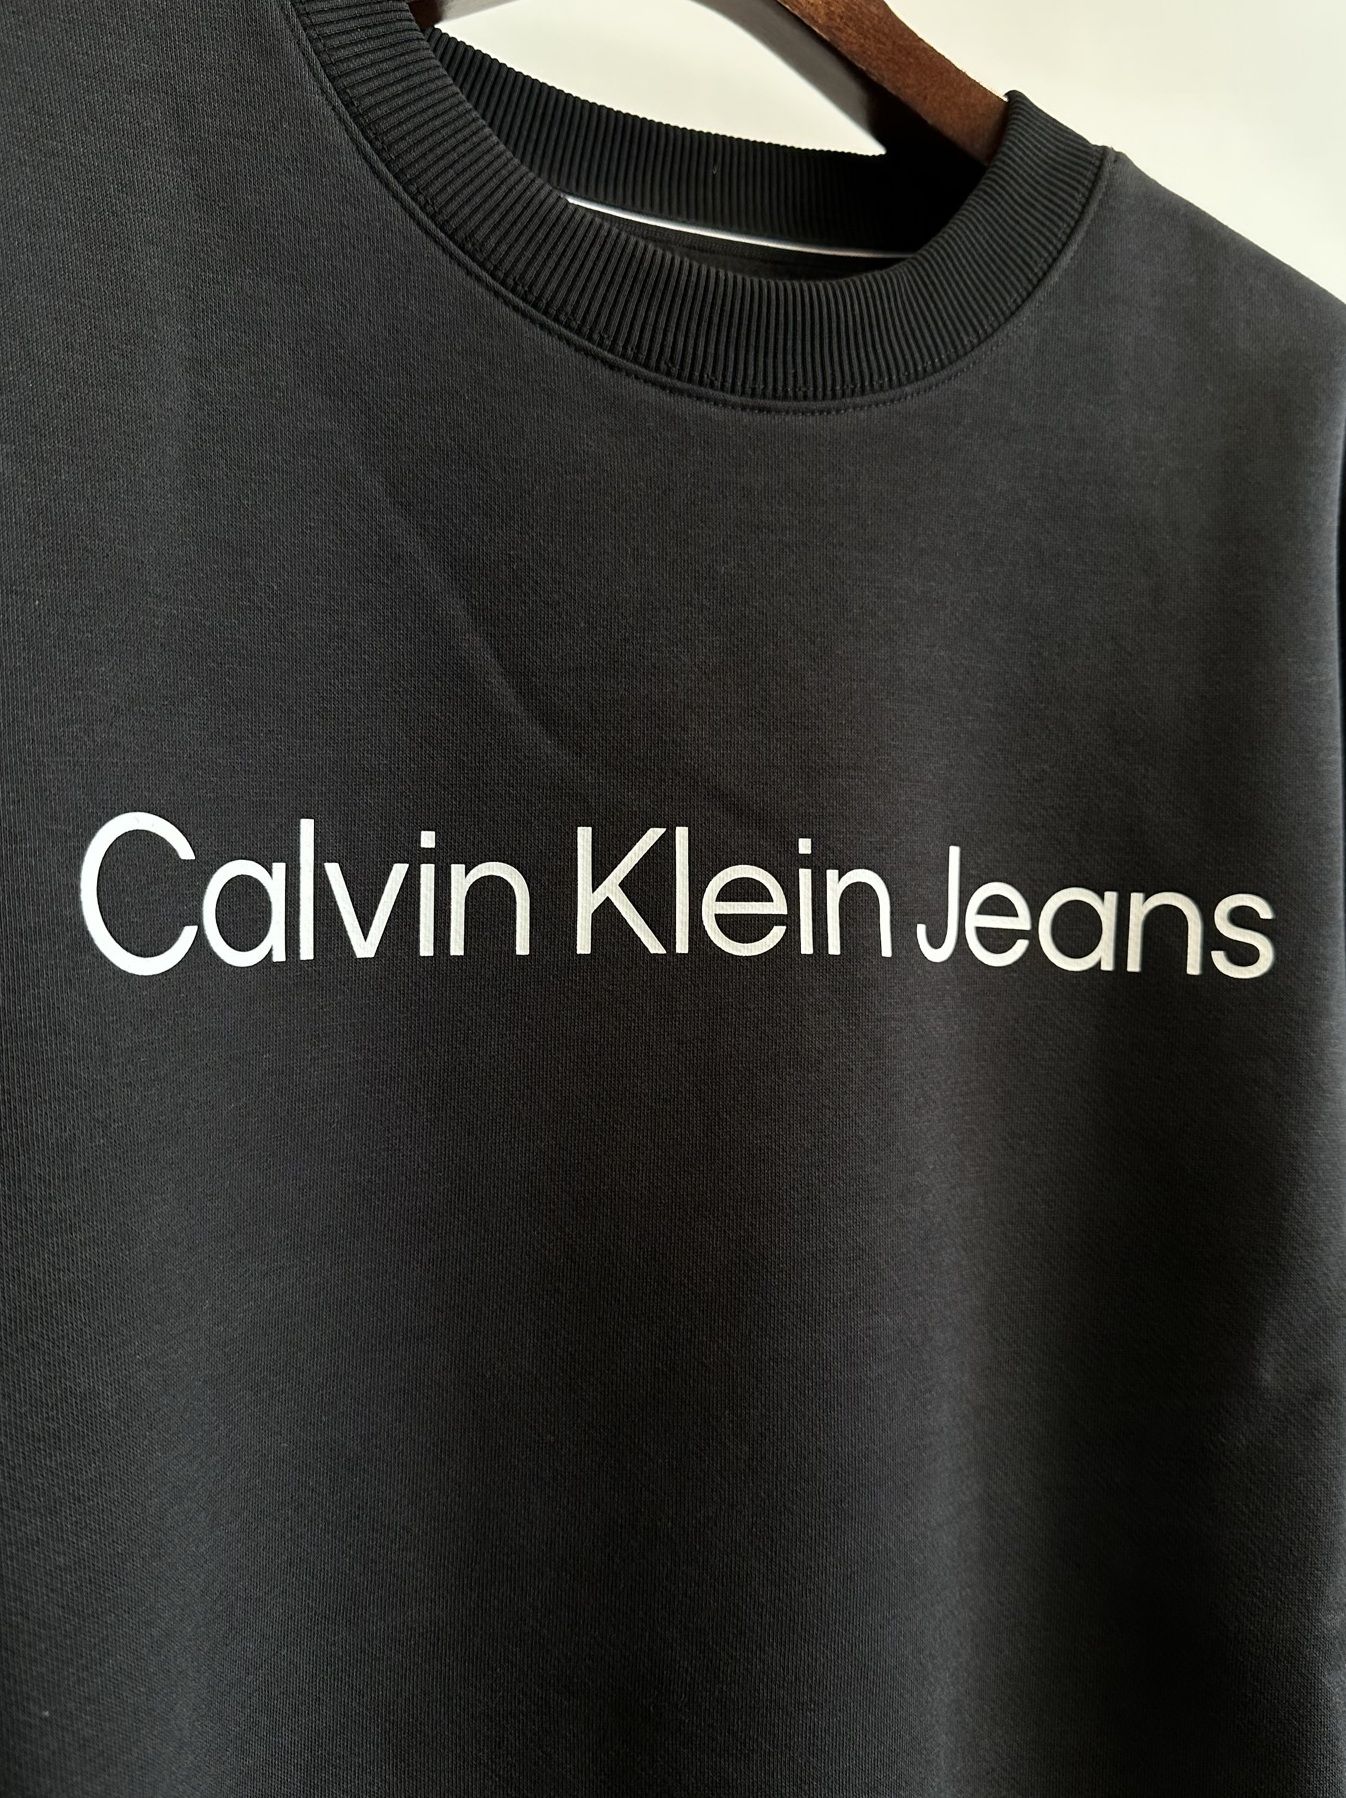 Calvin Klein - ロゴ クルーネック 裏起毛スウェットトレーナー